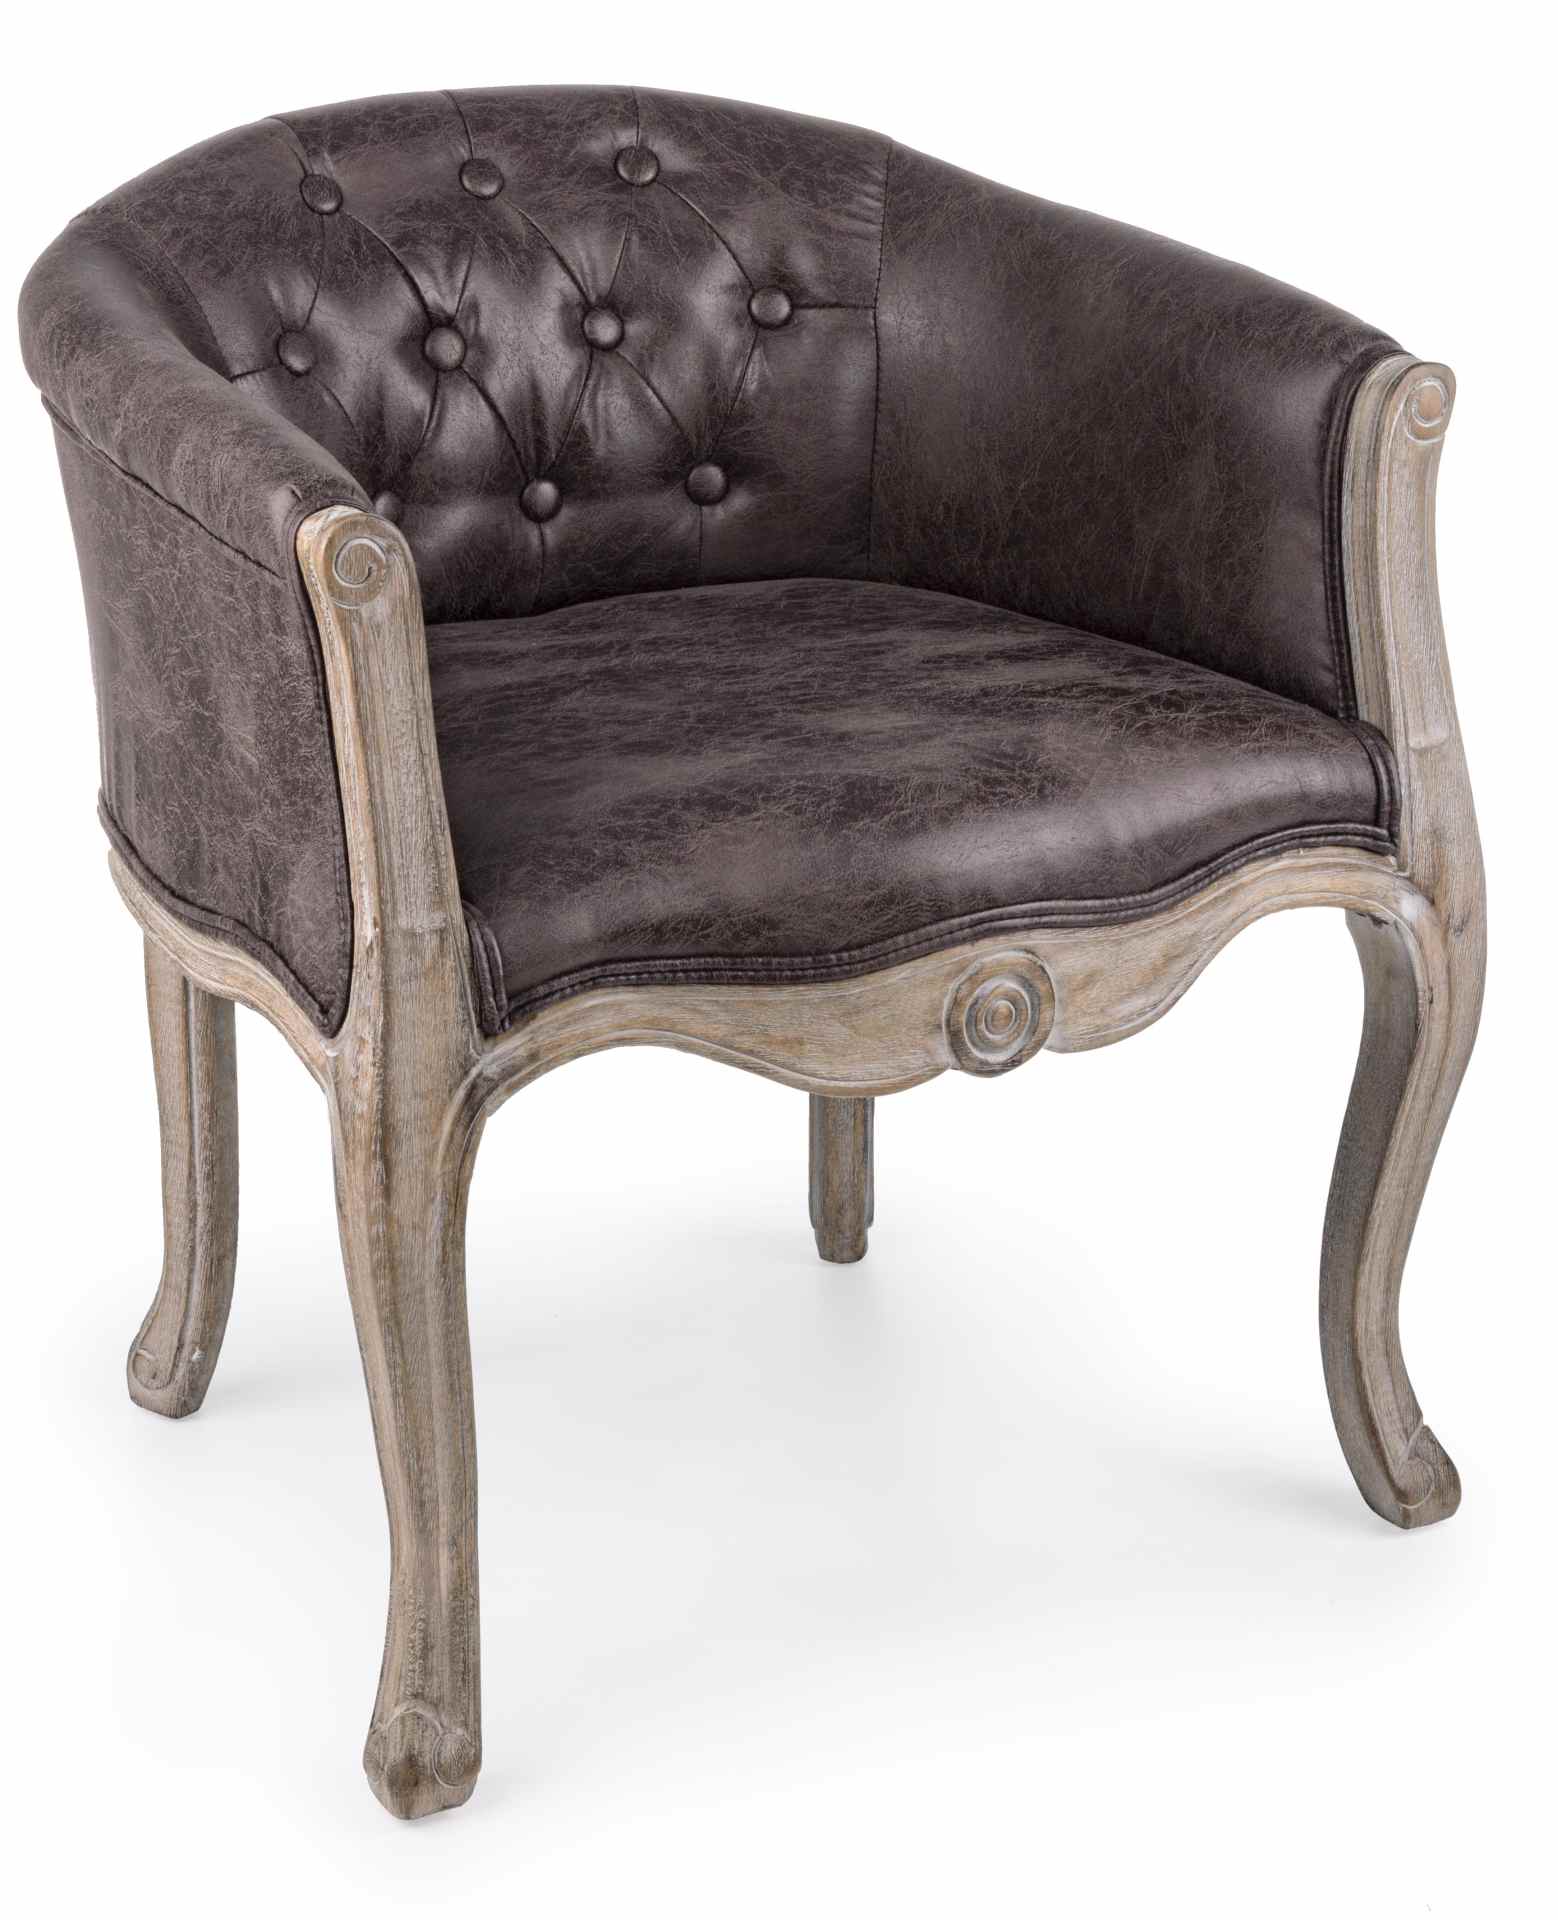 Der Sessel Diva überzeugt mit seinem klassischen Design. Gefertigt wurde er aus Kunstleder, welches einen braunen Farbton besitzt. Das Gestell ist aus Kautschukholz und hat eine natürliche Farbe. Der Sessel besitzt eine Sitzhöhe von 43 cm. Die Breite betr